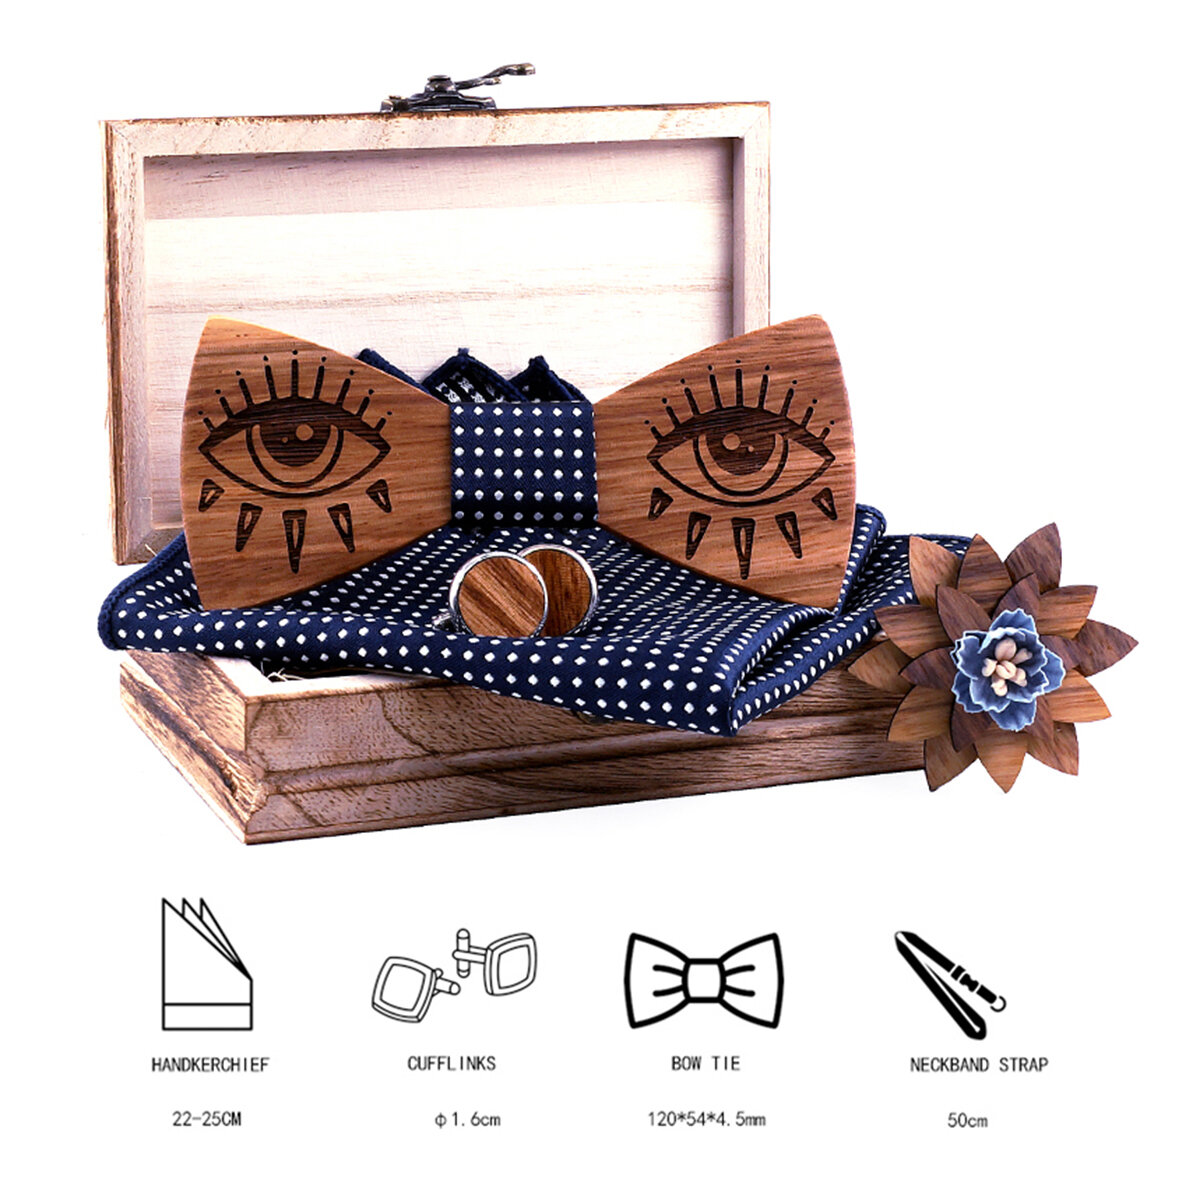 3D Wooden Tie Square Handkerchief Cufflinks Wood Bow Tie Wedding Dinner Handmade Wooden Ties Gravata